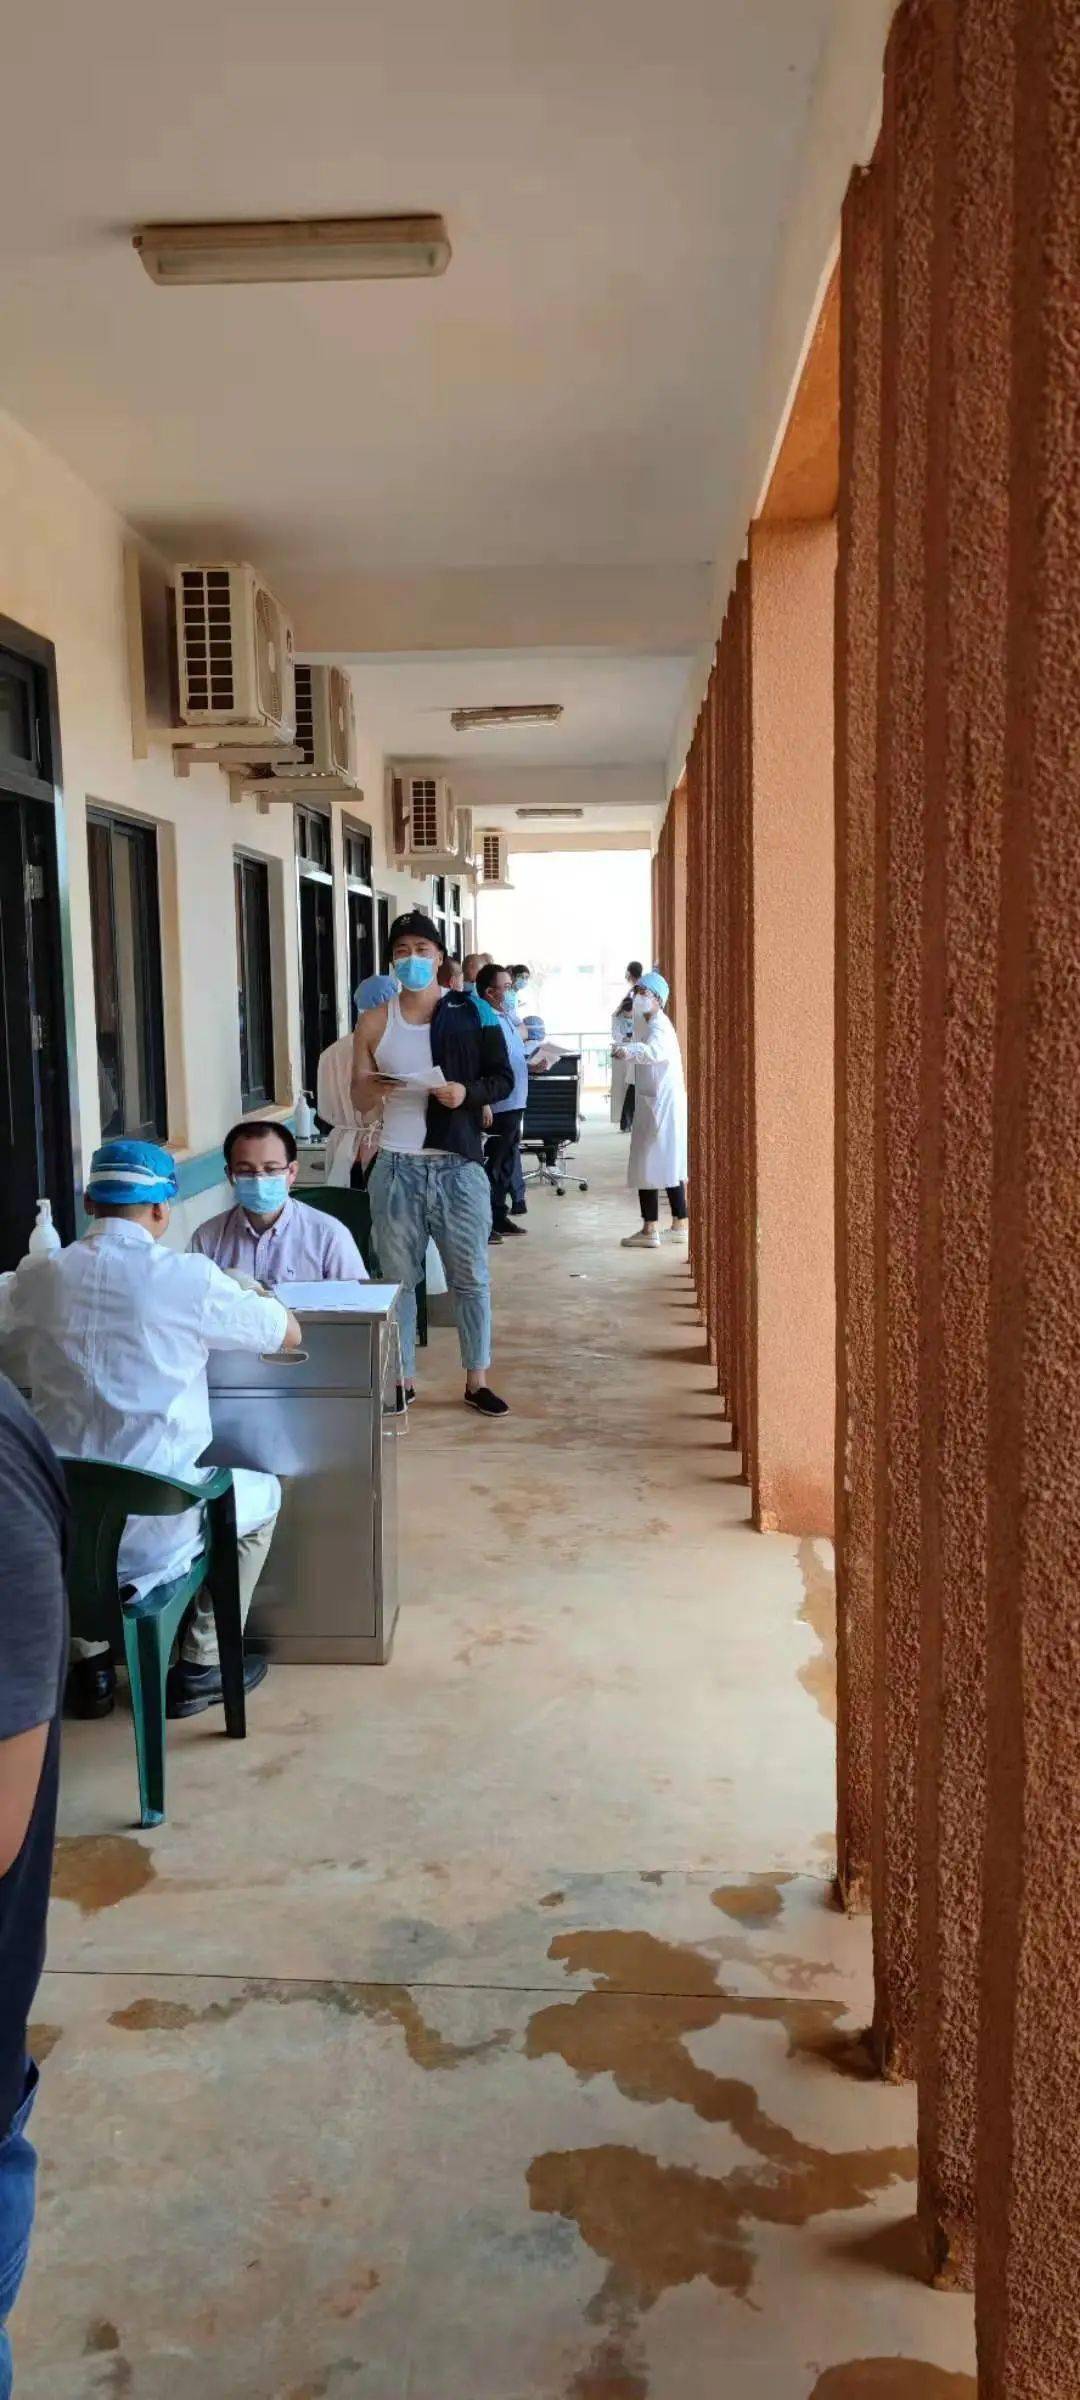 医事聚焦大爱中国广西援尼日尔医疗队为在尼中国公民接种新冠疫苗